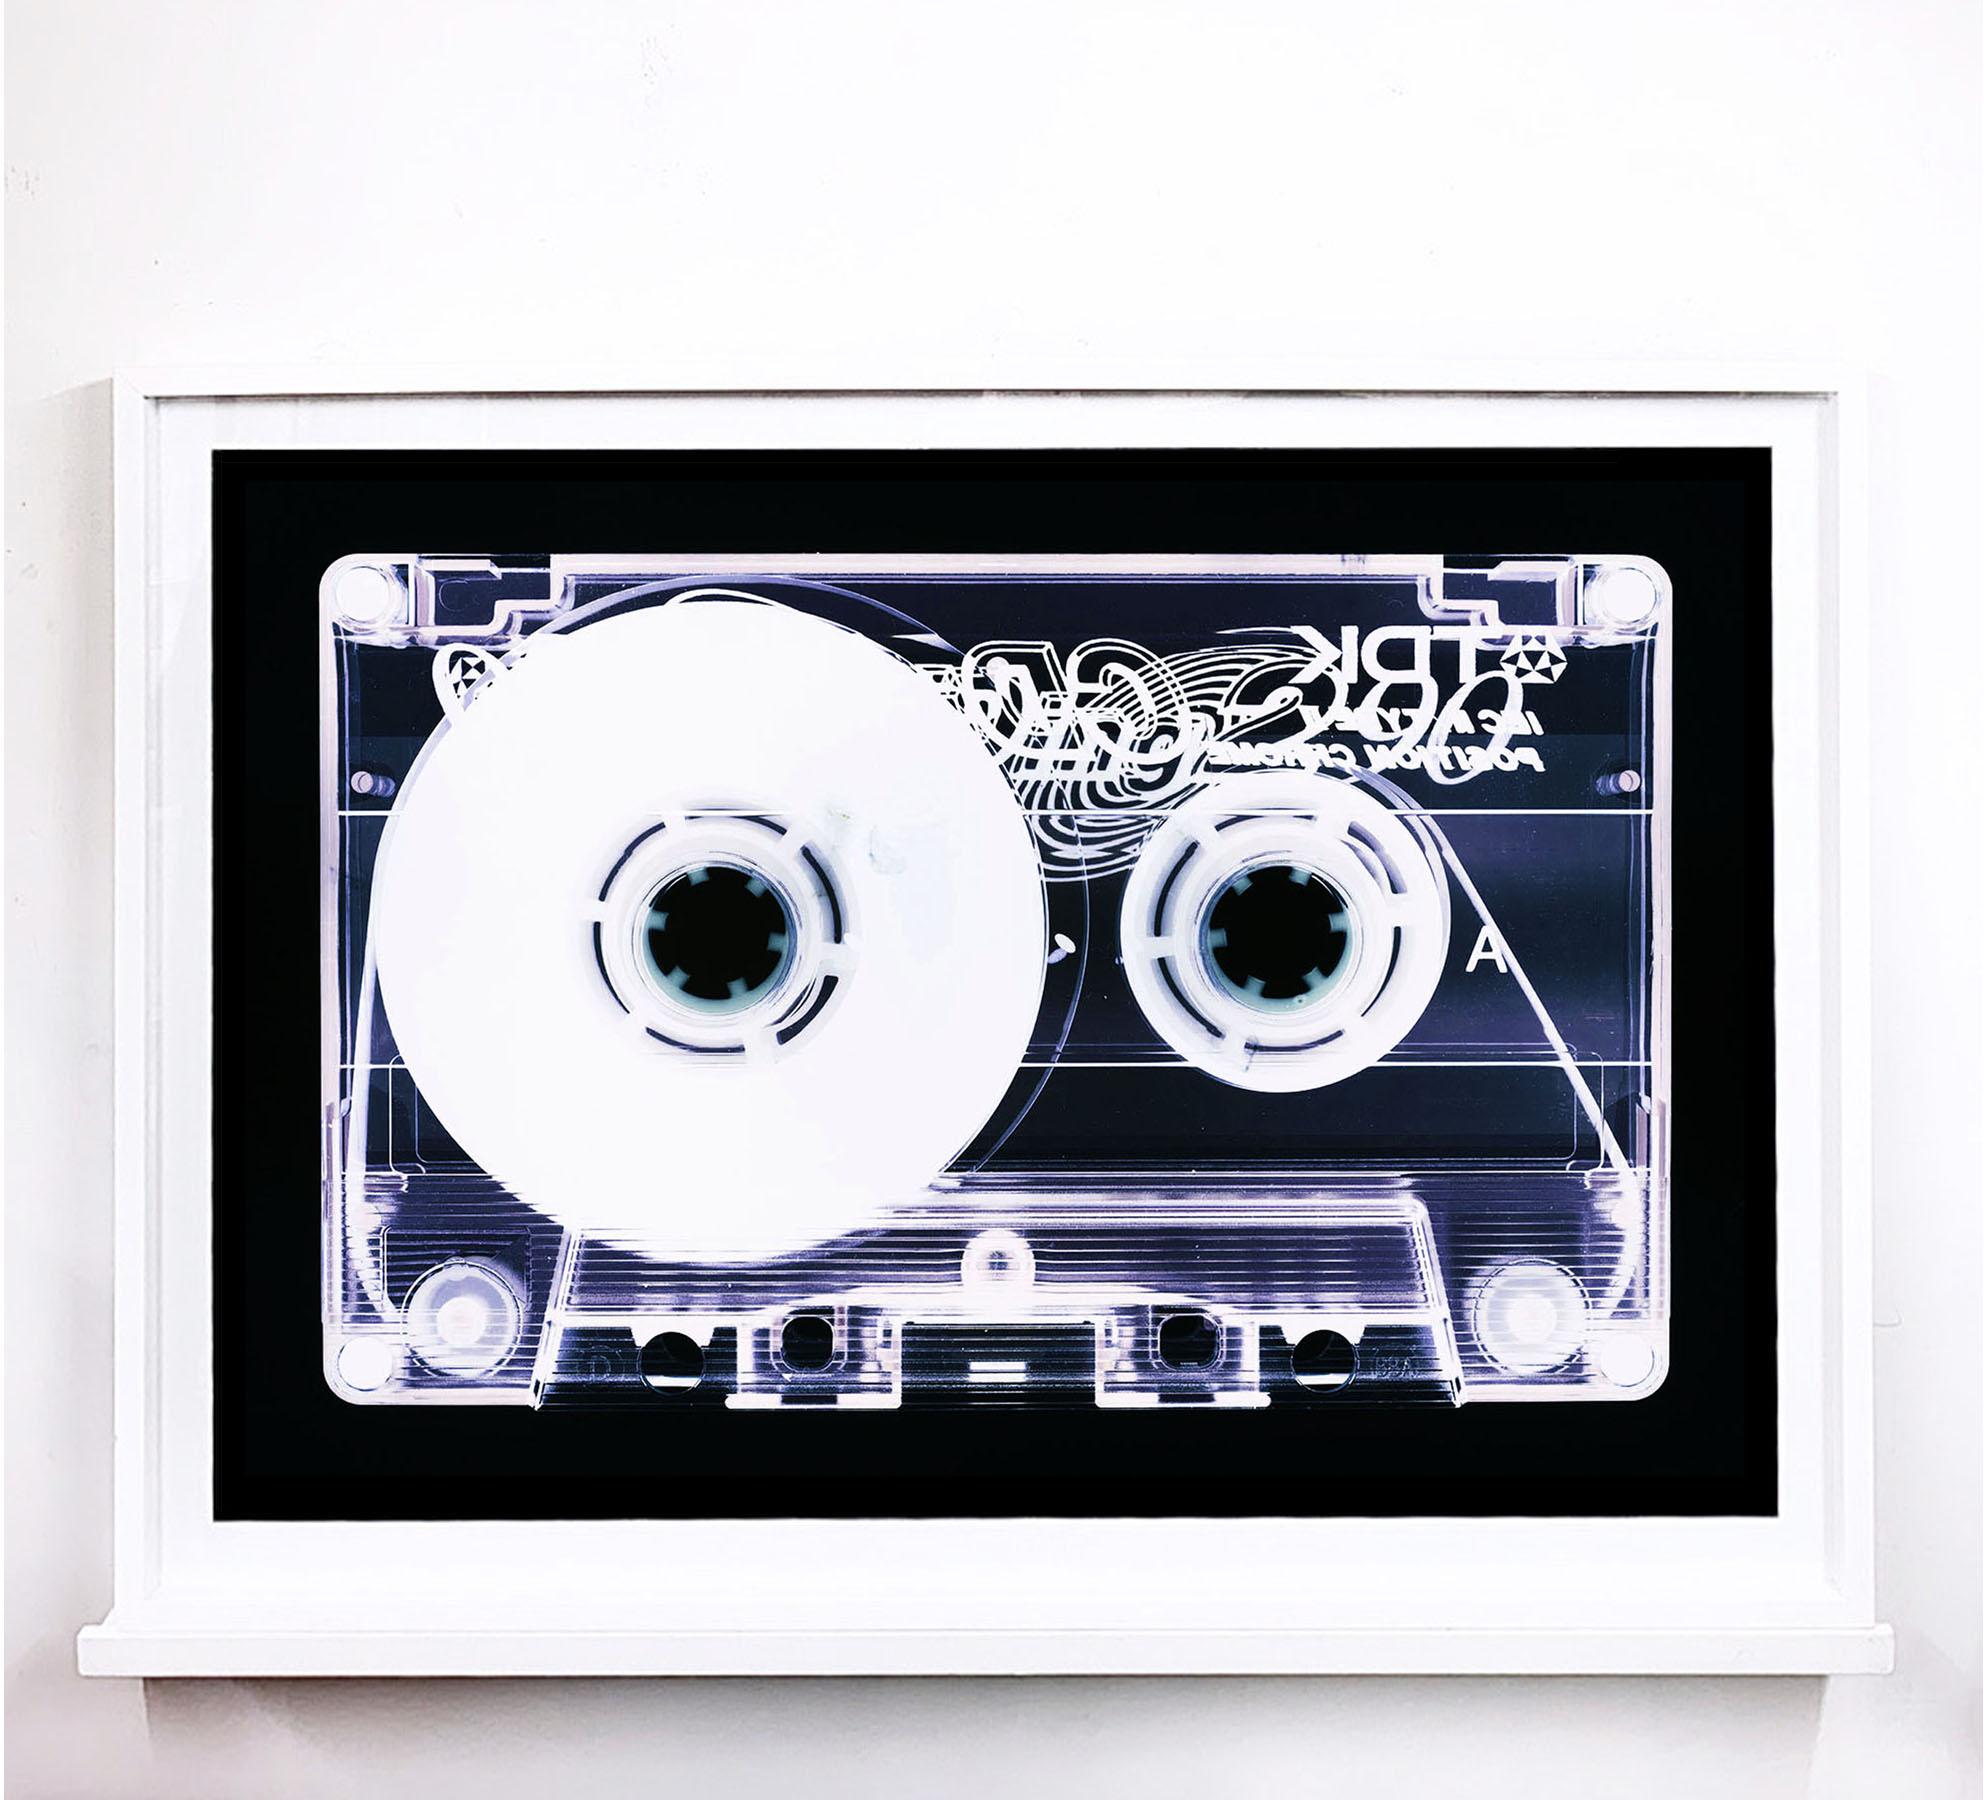 Tape-Kollektion - Blank Tape Seite A - Konzeptionelle Farbe Musik Kunst – Photograph von Heidler & Heeps